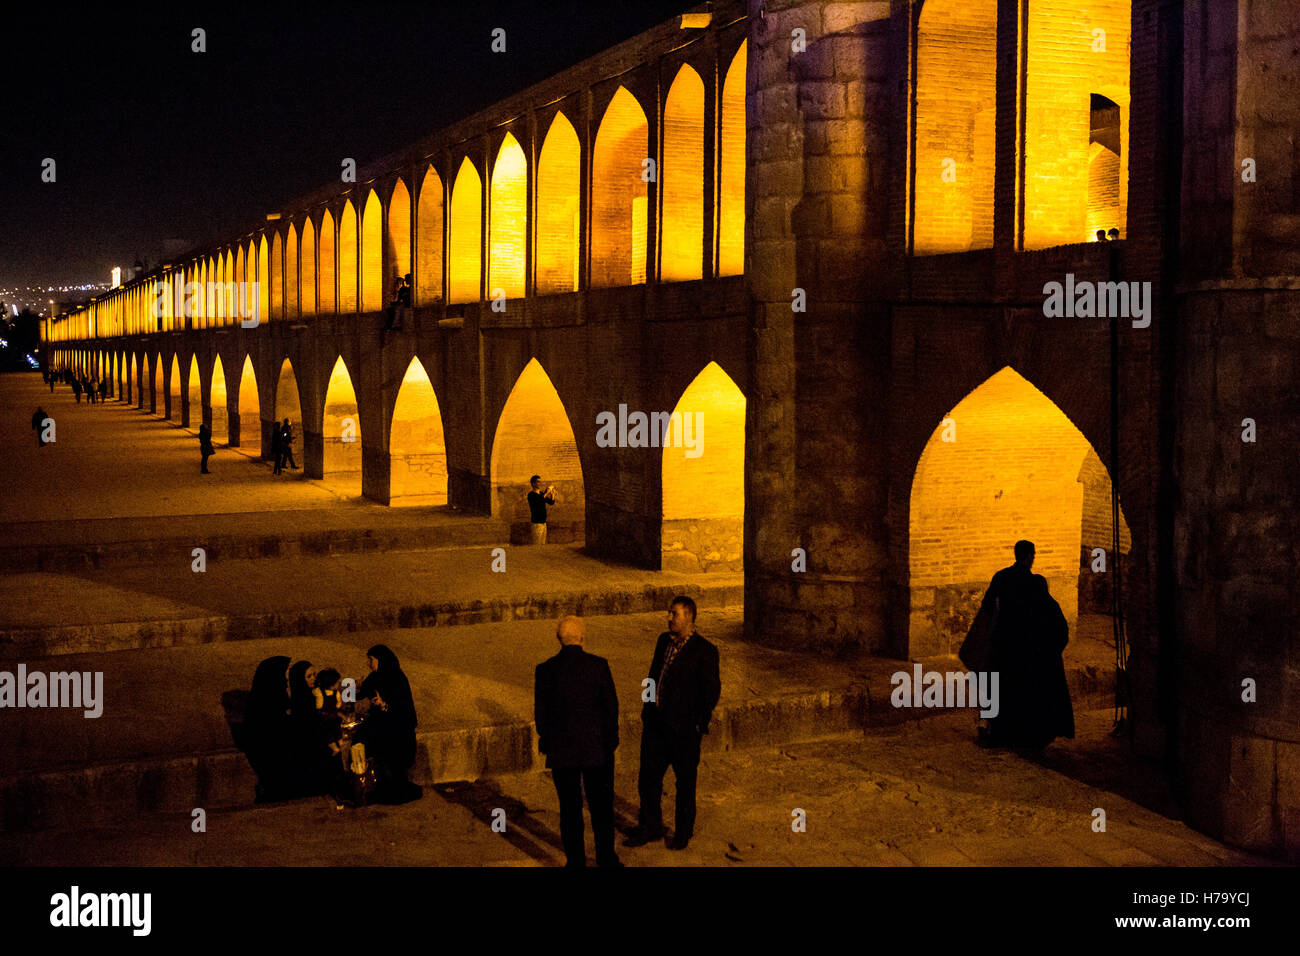 Les gens se reposent au si-o-se pol silhouettes contre pont arches jaune Banque D'Images